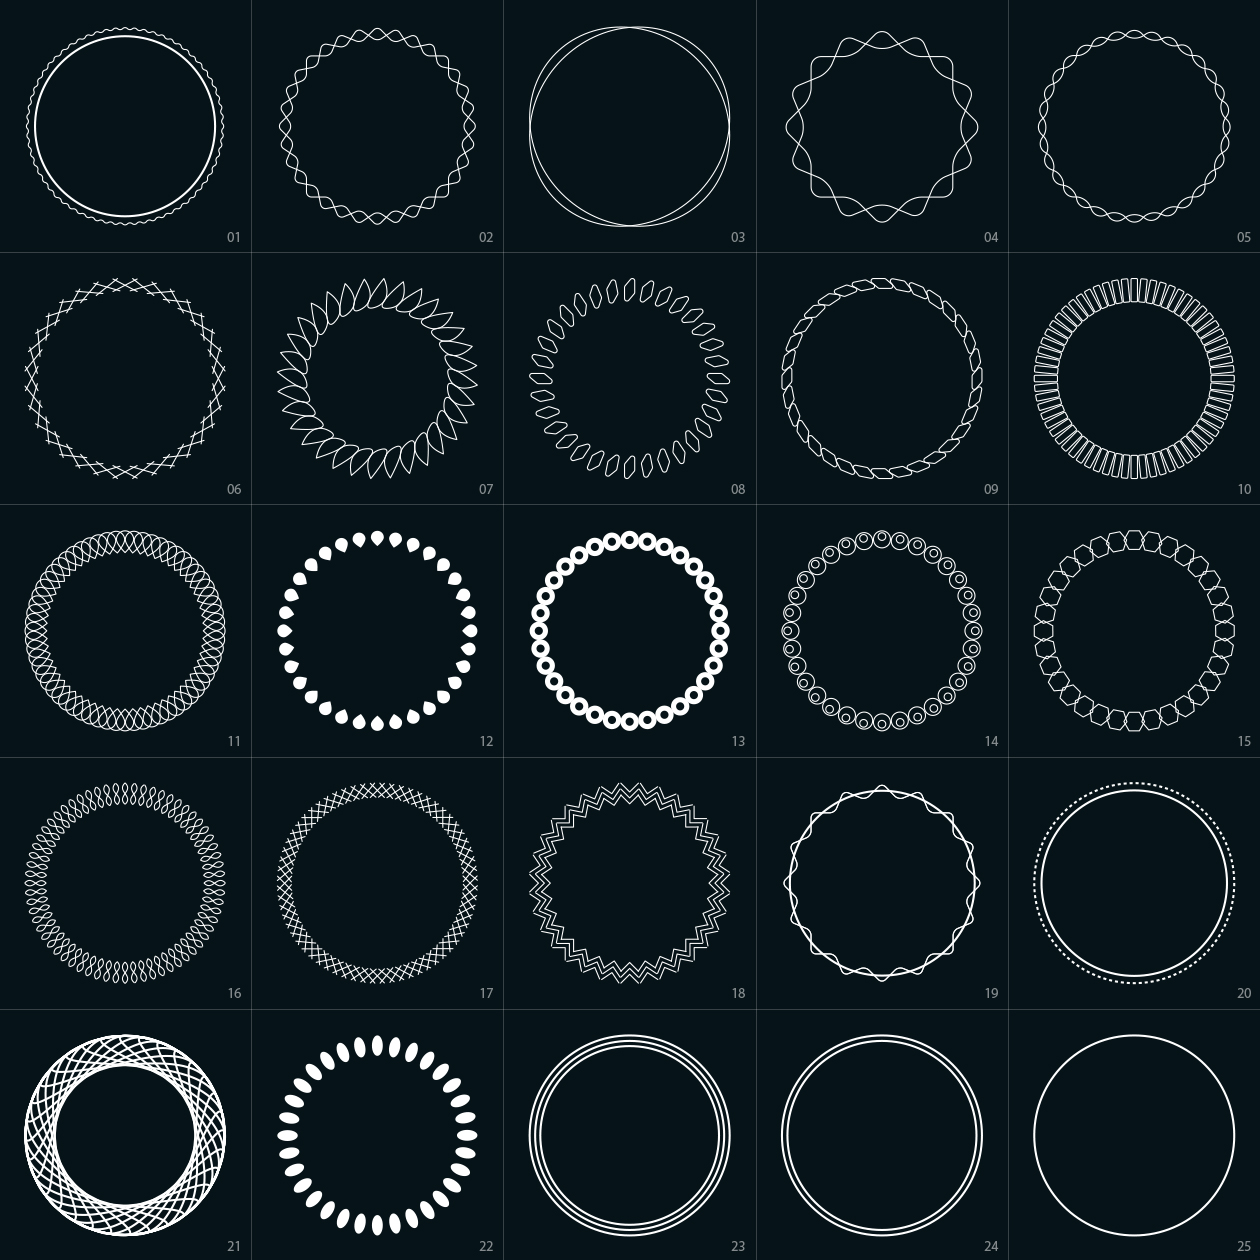 圆形圆环装饰元素矢量图形素材 Circle Design Elements Part II插图